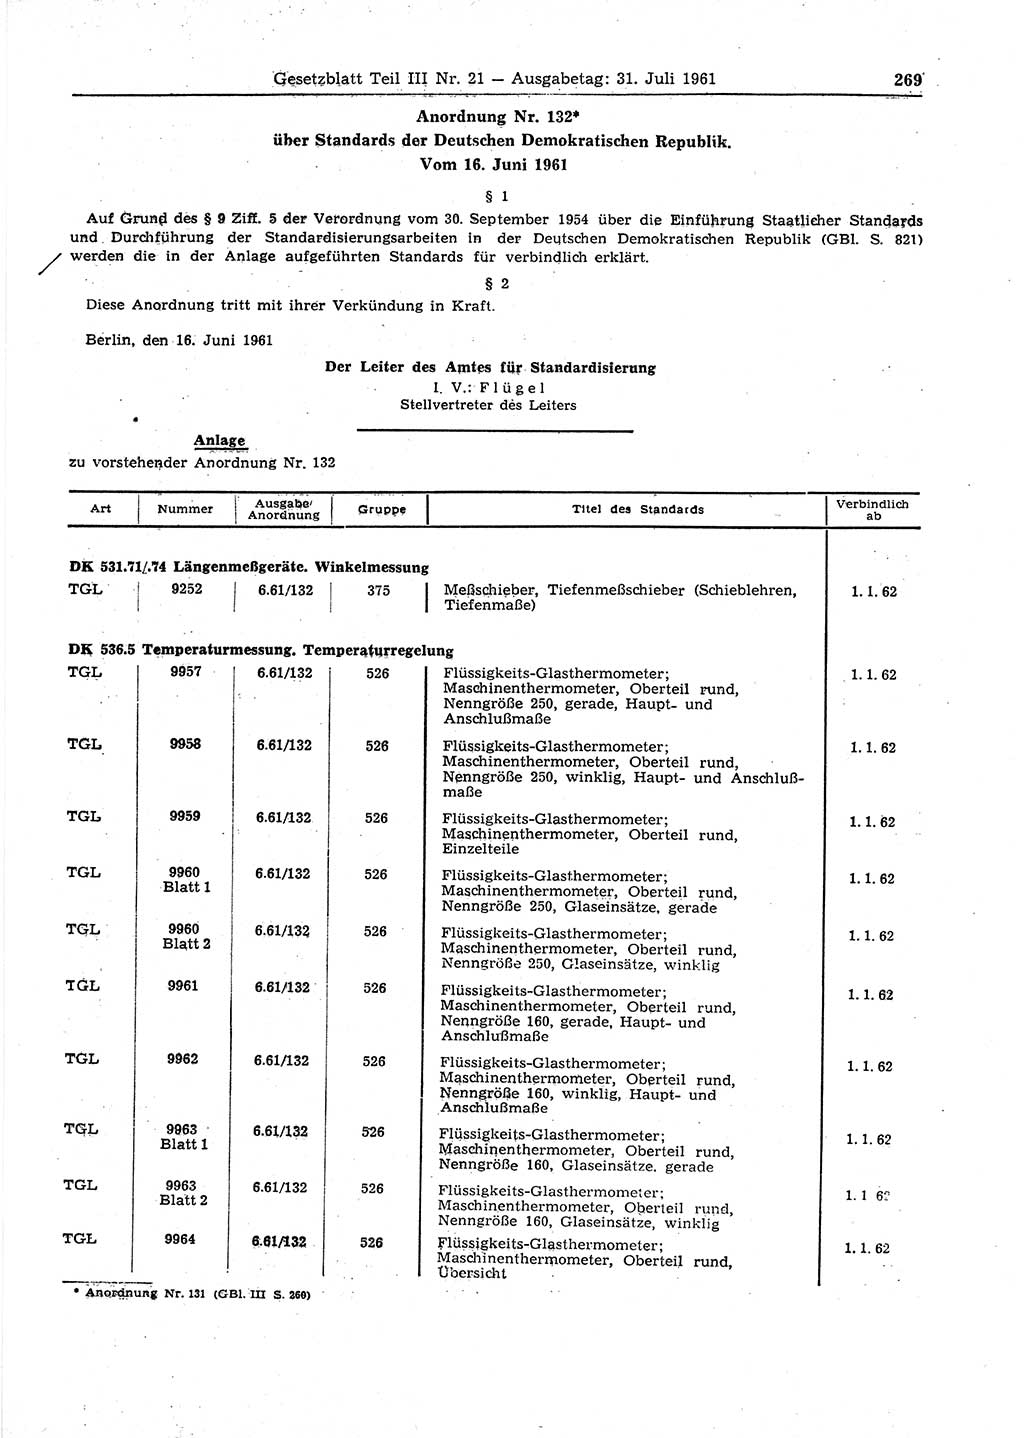 Gesetzblatt (GBl.) der Deutschen Demokratischen Republik (DDR) Teil ⅠⅠⅠ 1961, Seite 269 (GBl. DDR ⅠⅠⅠ 1961, S. 269)